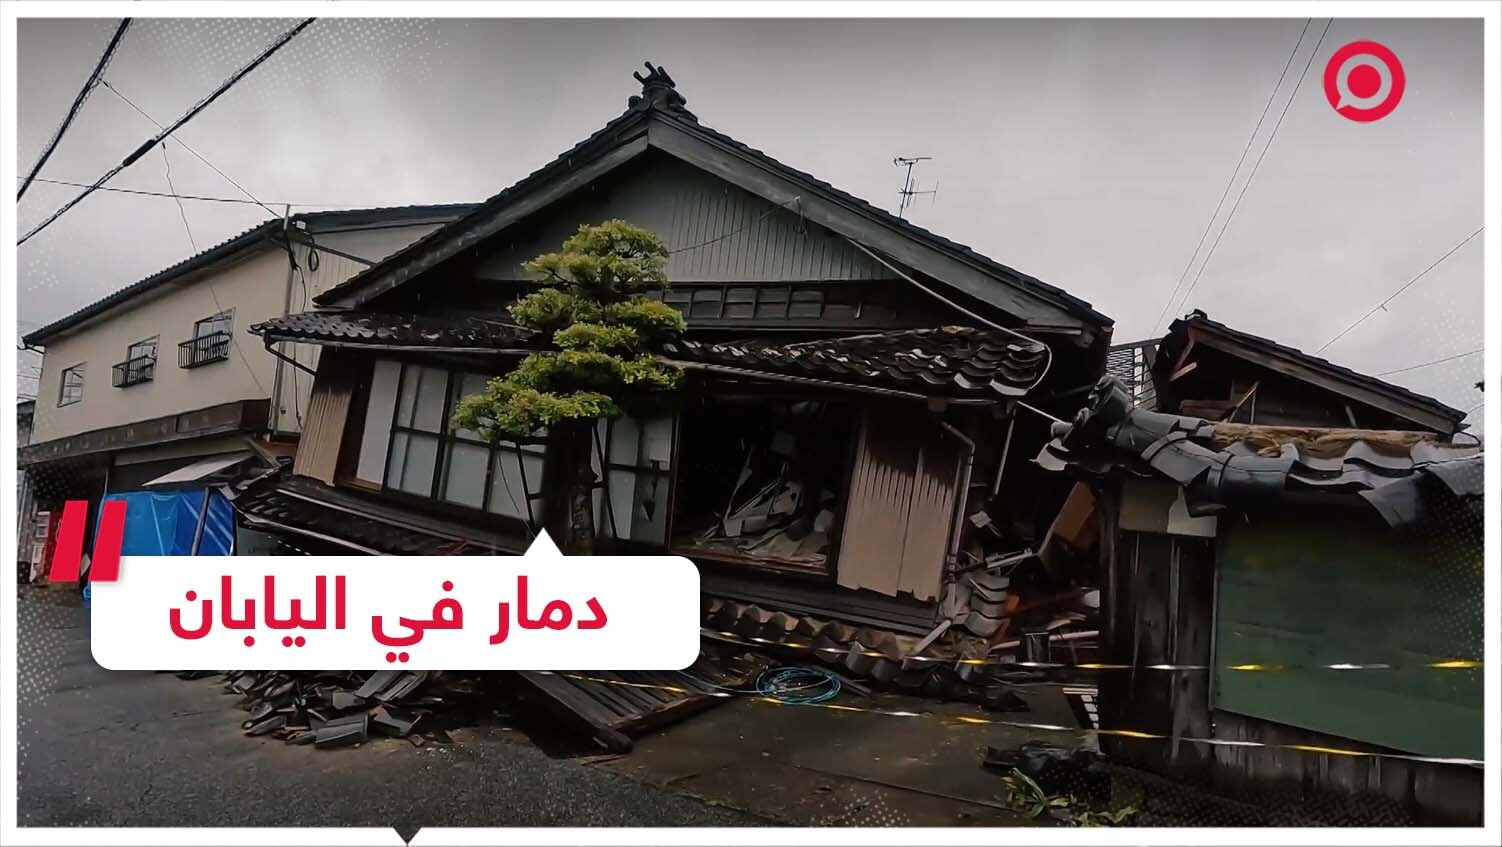 دمار في اليابان بعد هزة أرضية ضربت محافظة ساحلية